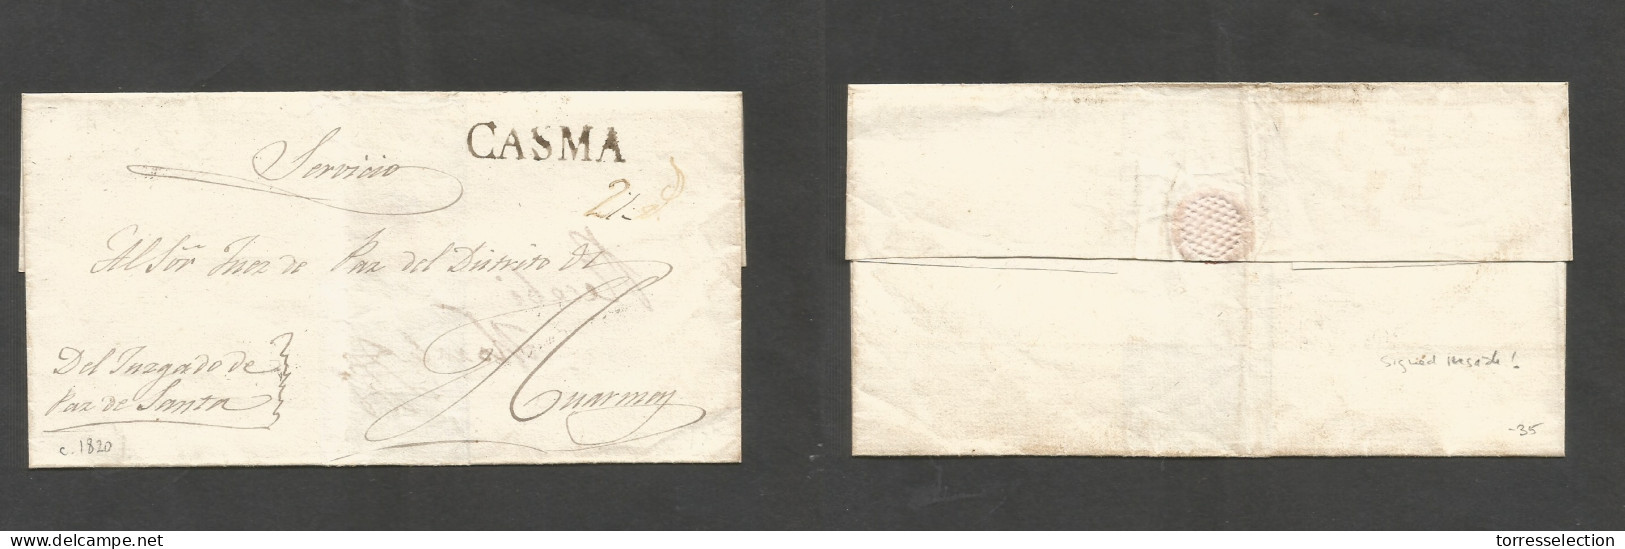 PERU. C. 1820. Casma - Huarmen E Official Mail / Servicio / Juzgado De Paz De Santa. Sobre Ink Pmk "CASMA" + "2rs". Reve - Perú